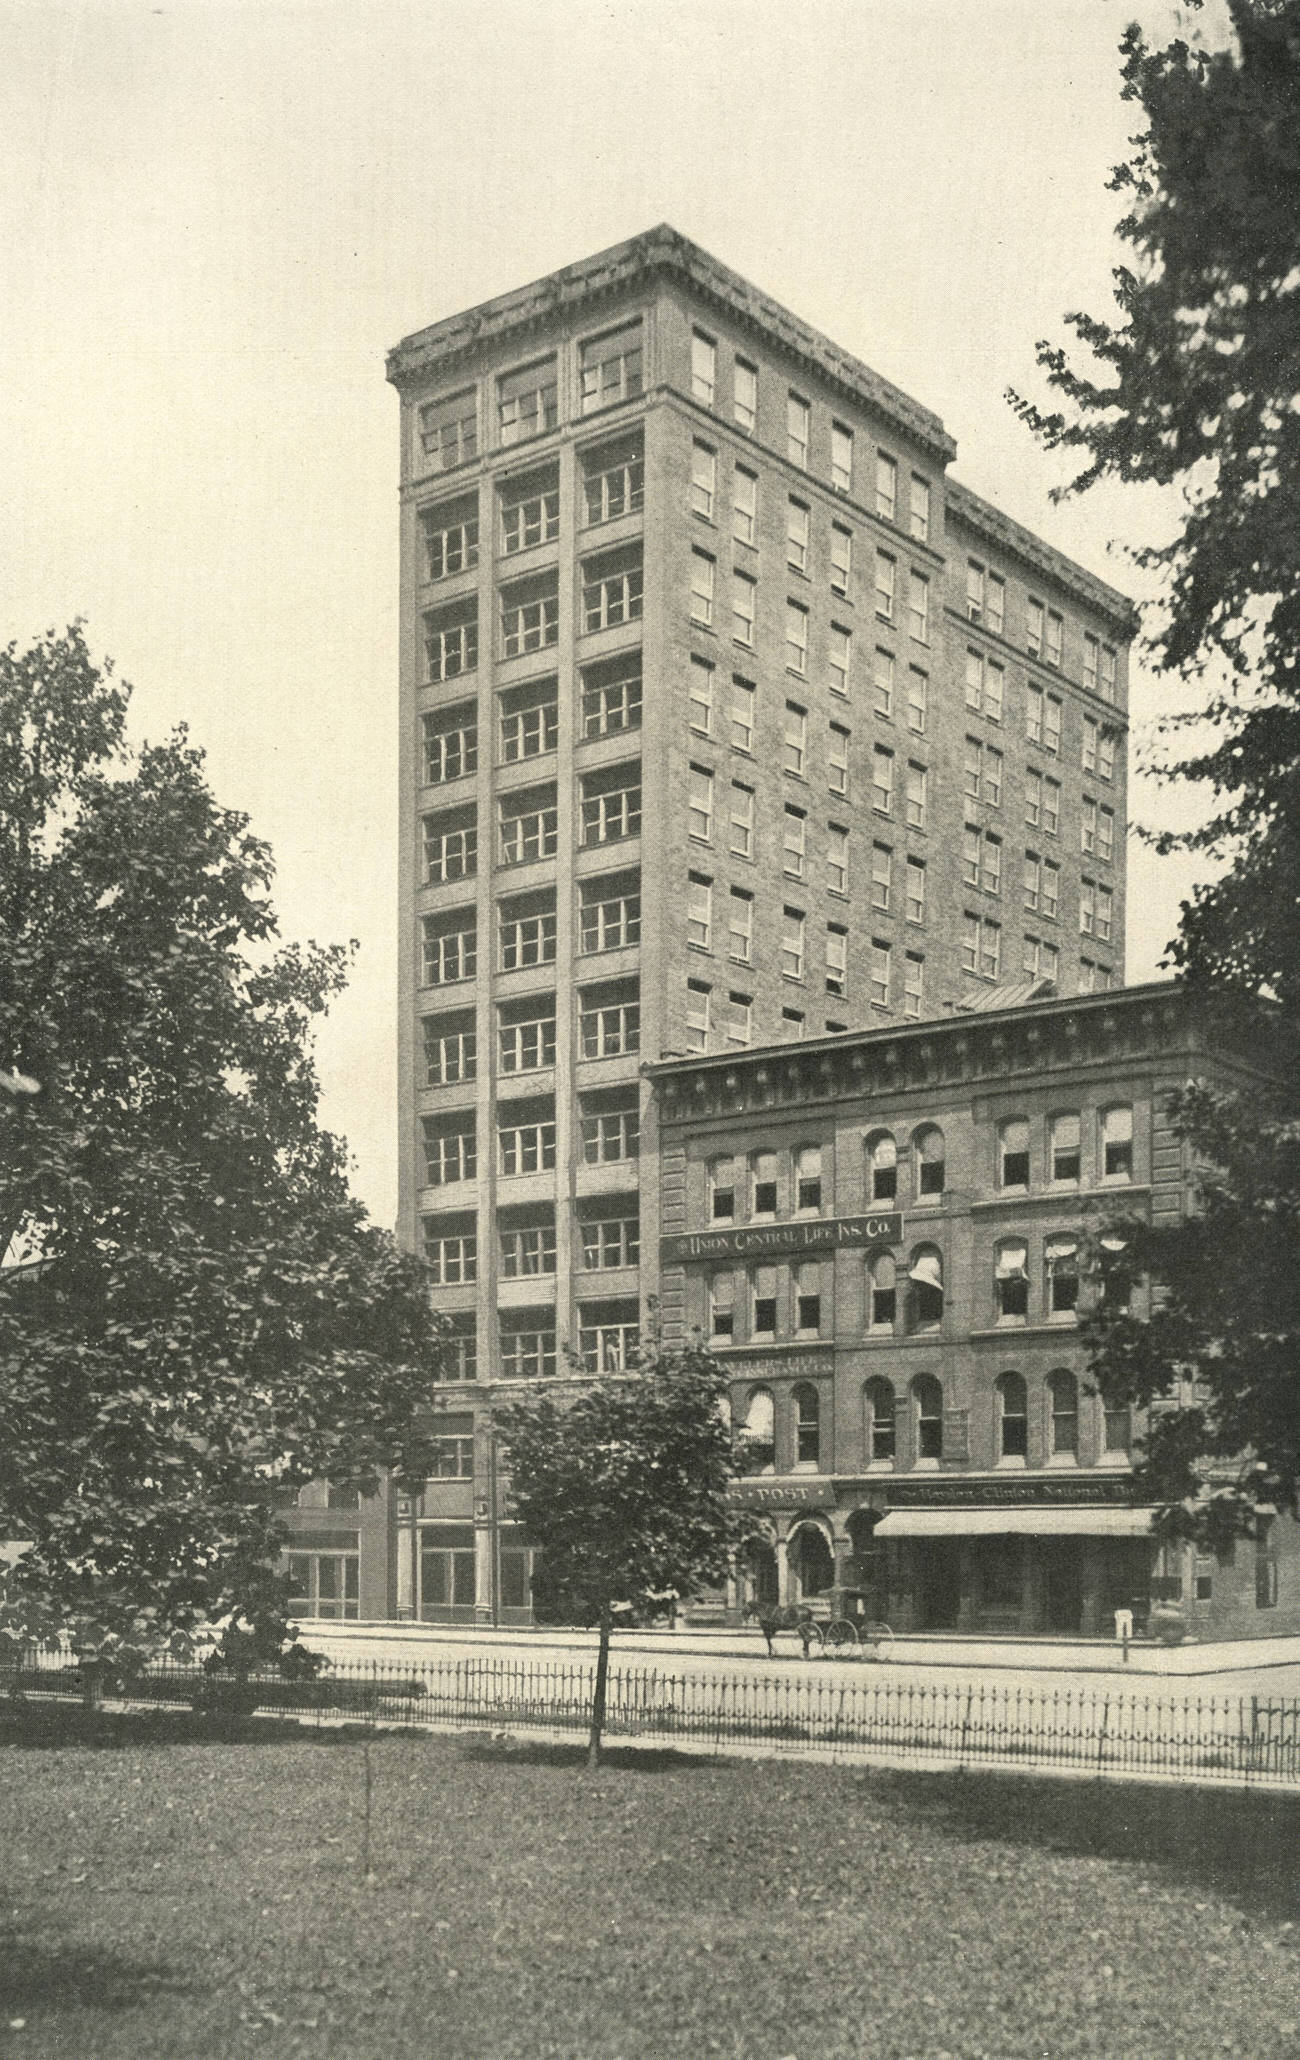 Hayden Building on Broad Street, opened in 1901